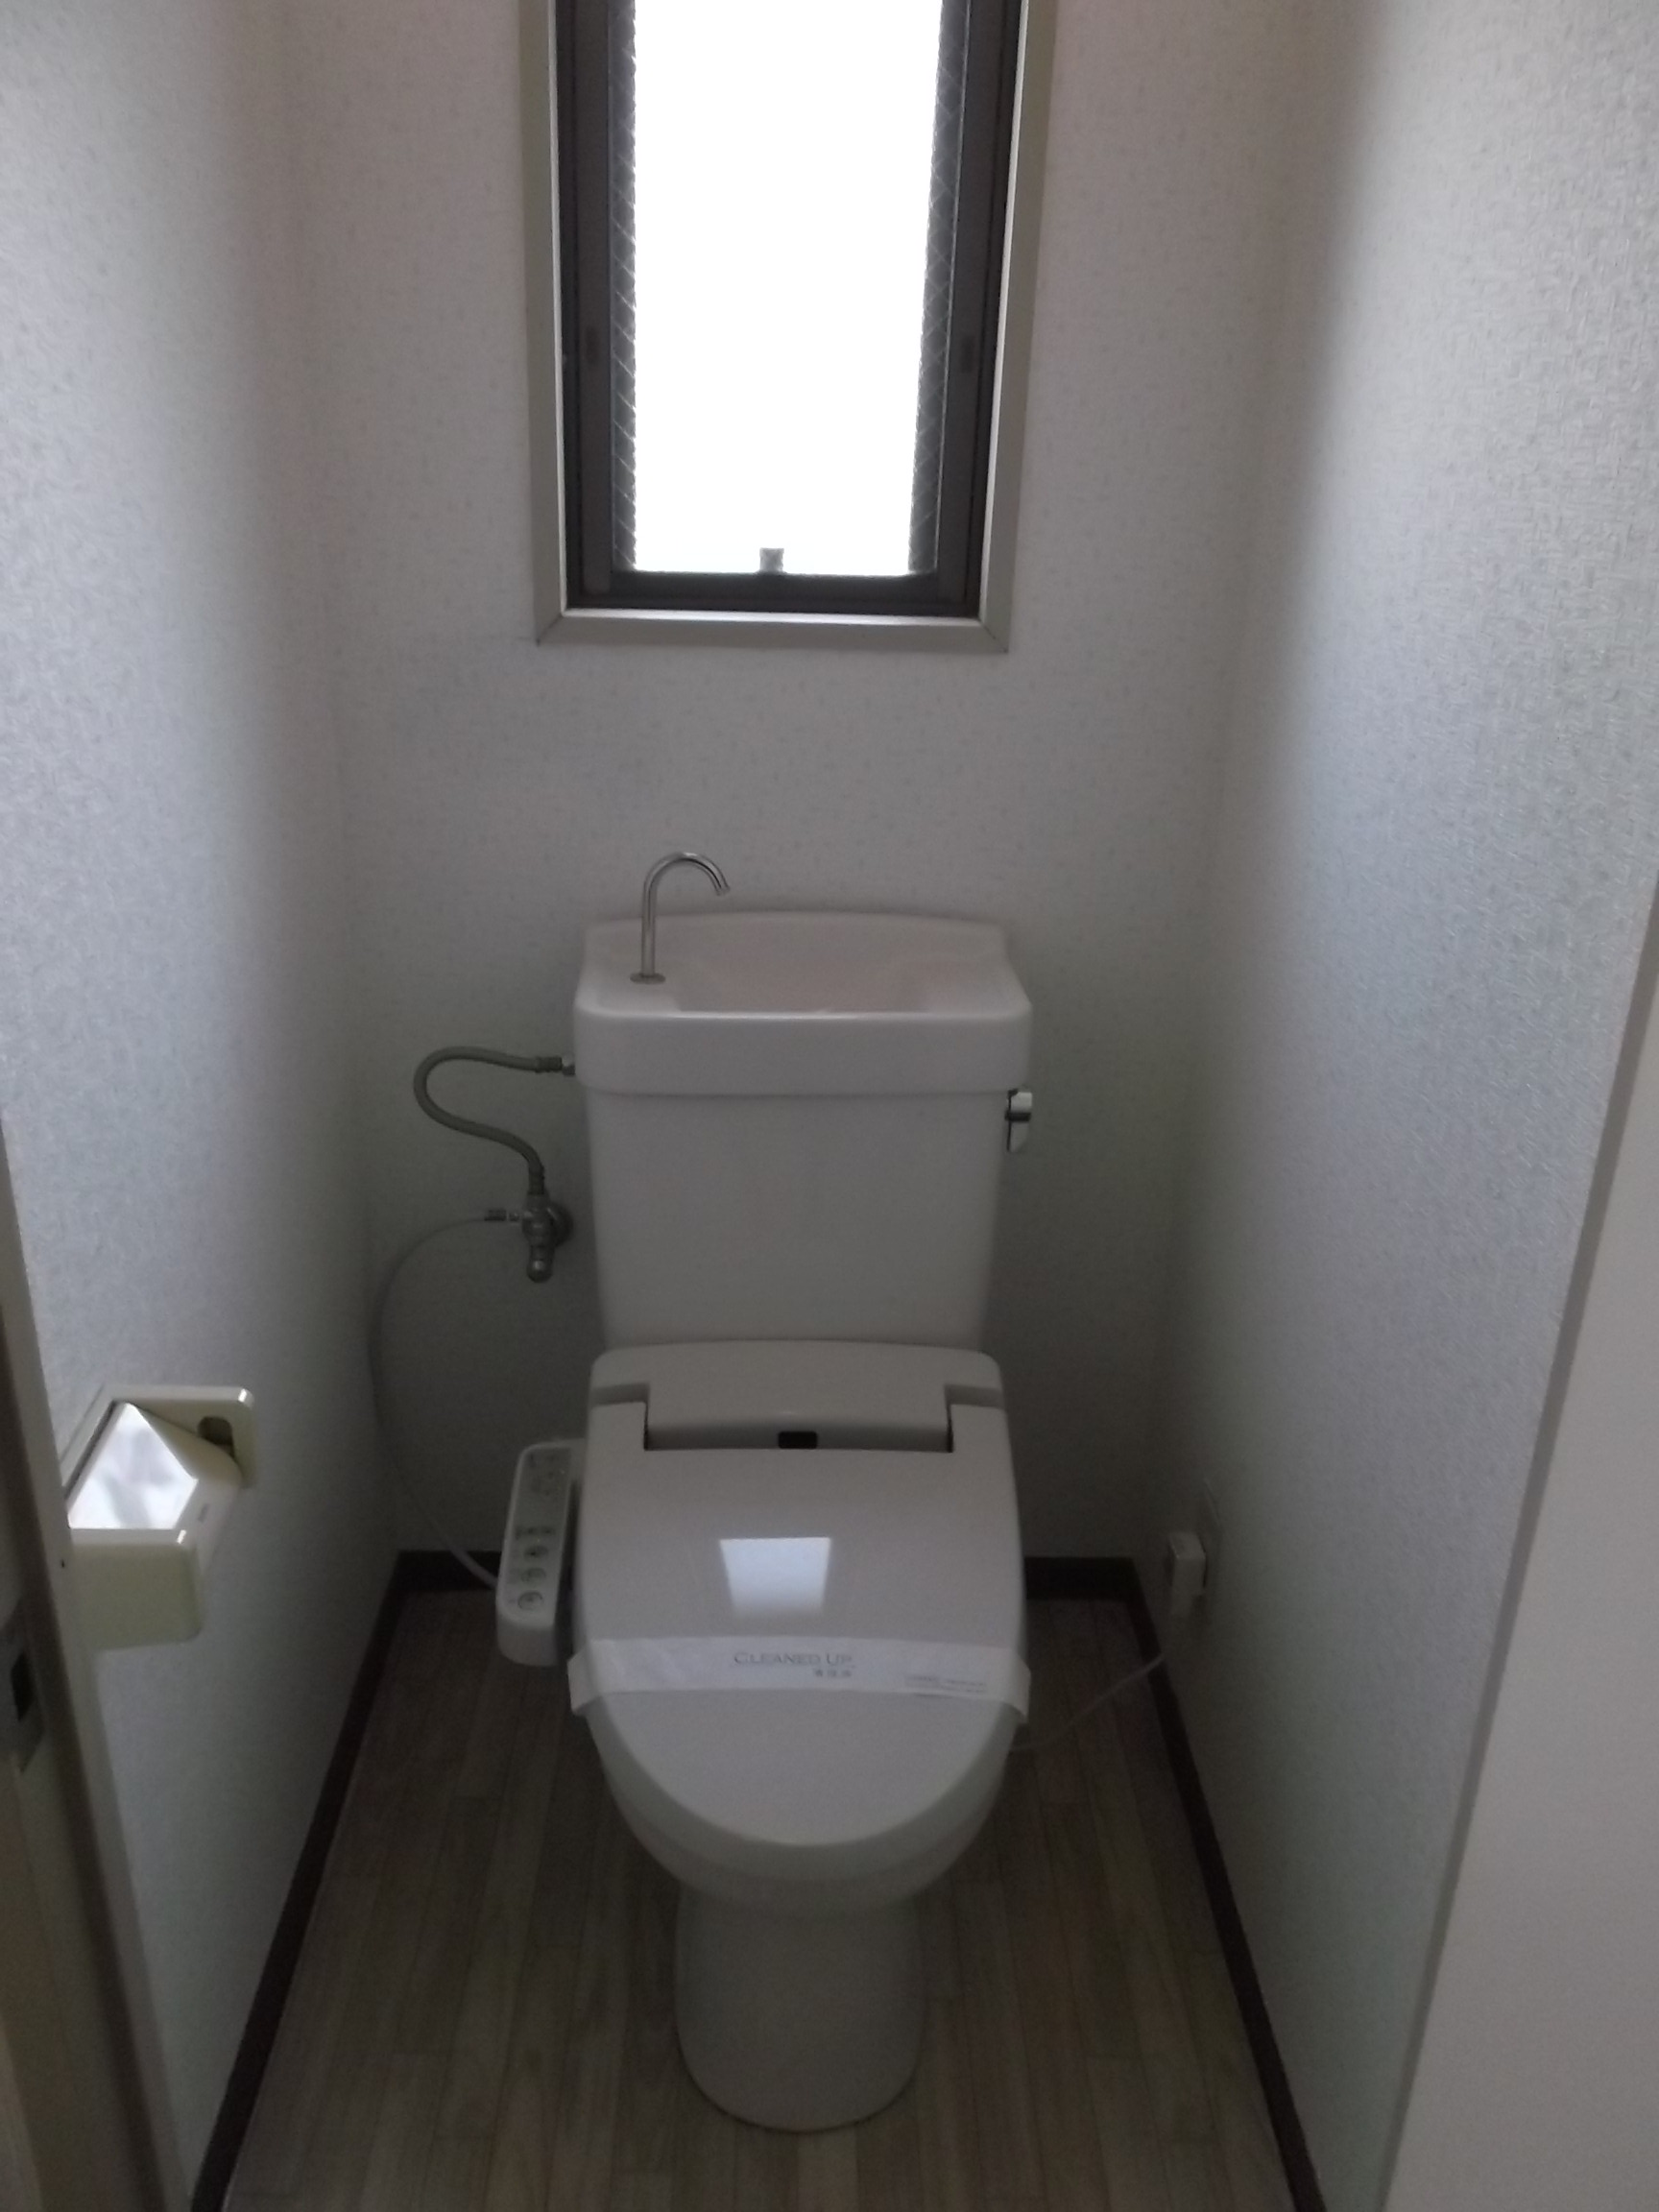 Toilet. With happy window ◎